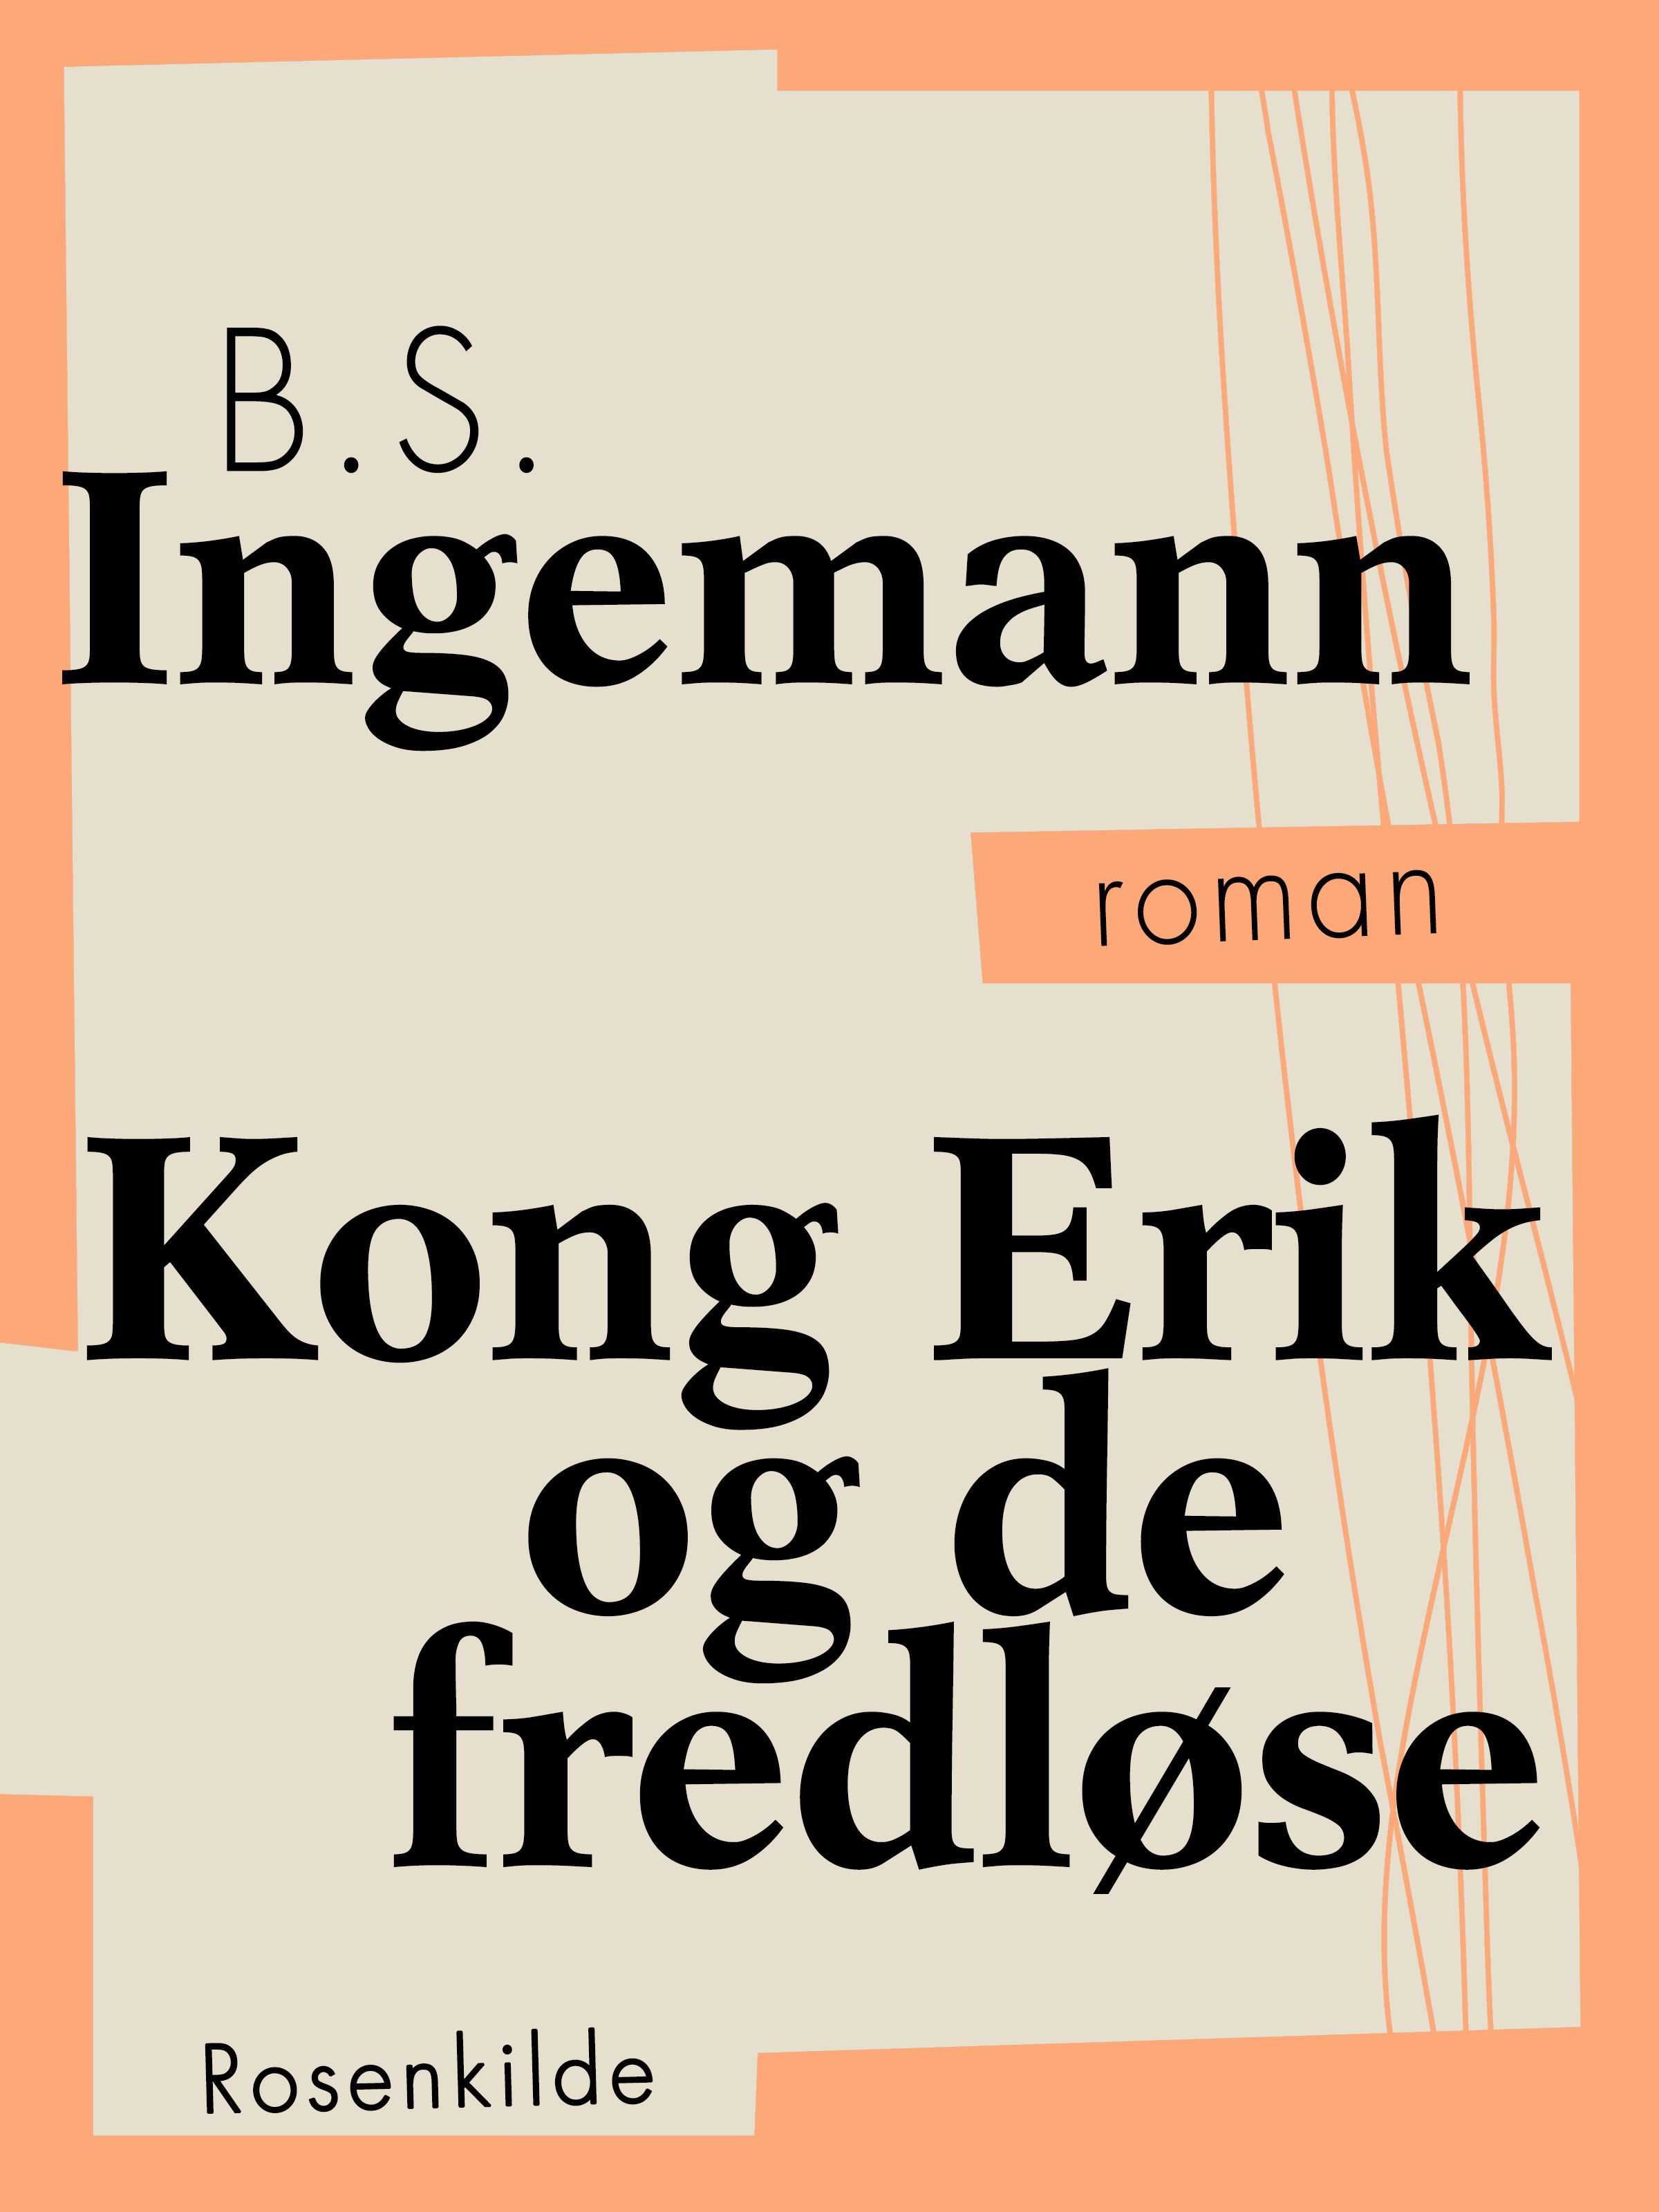 Kong Erik og de fredløse, audiobook by B.S. Ingemann